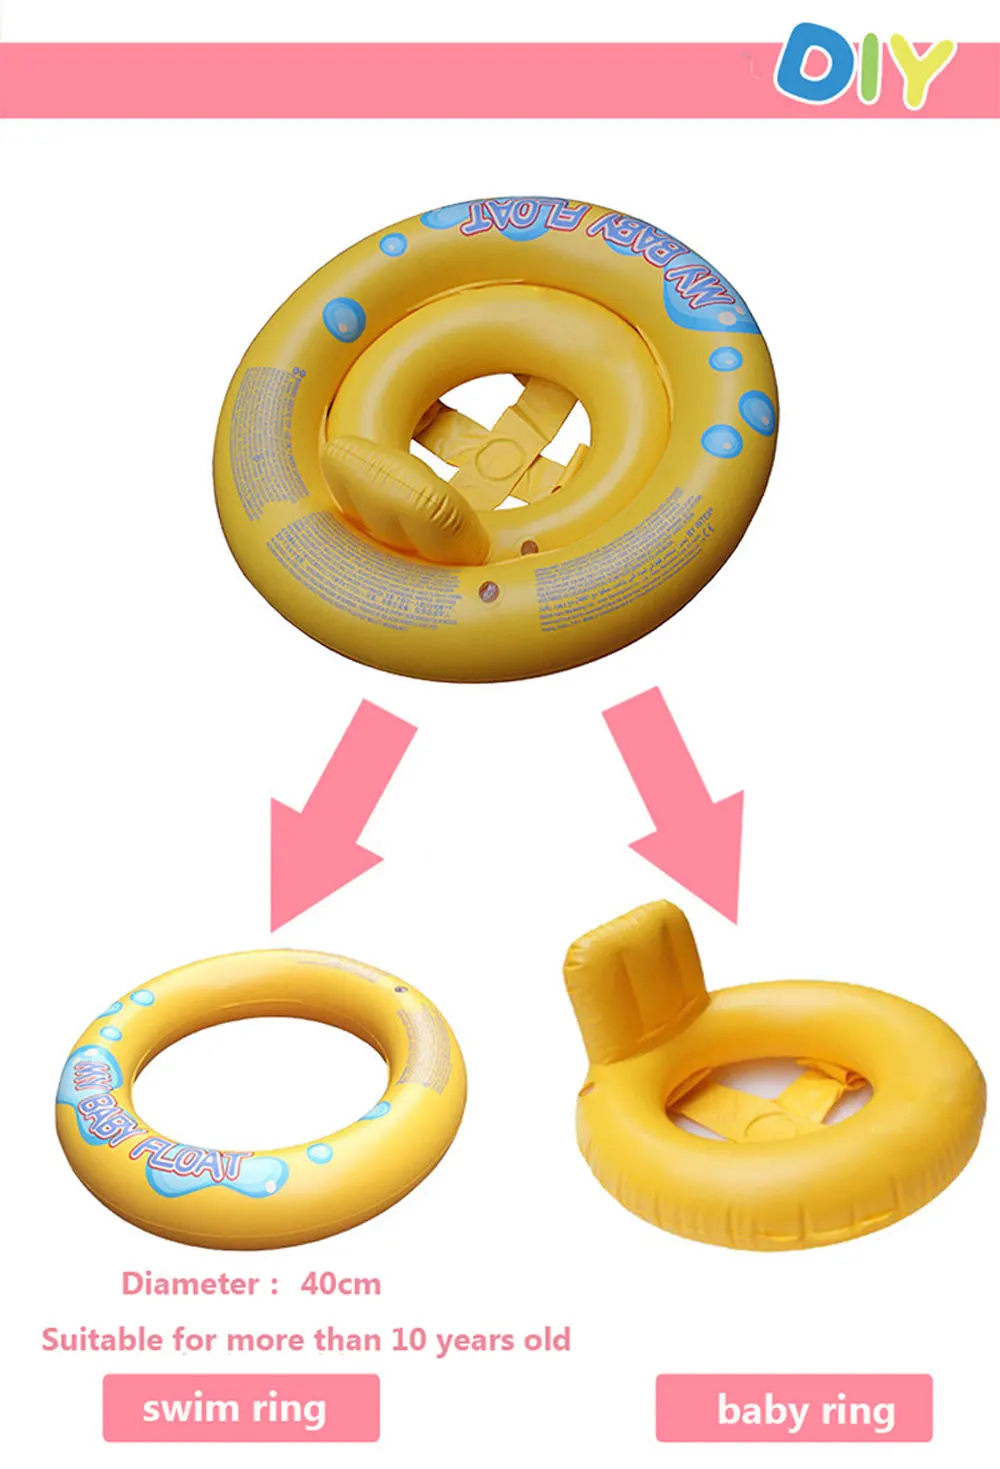 Детские Надувные Float Плавание ming круг надувной матрас Лодка сиденья трубка кольцо резиновая Плавание ming бассейн игрушки кольцо